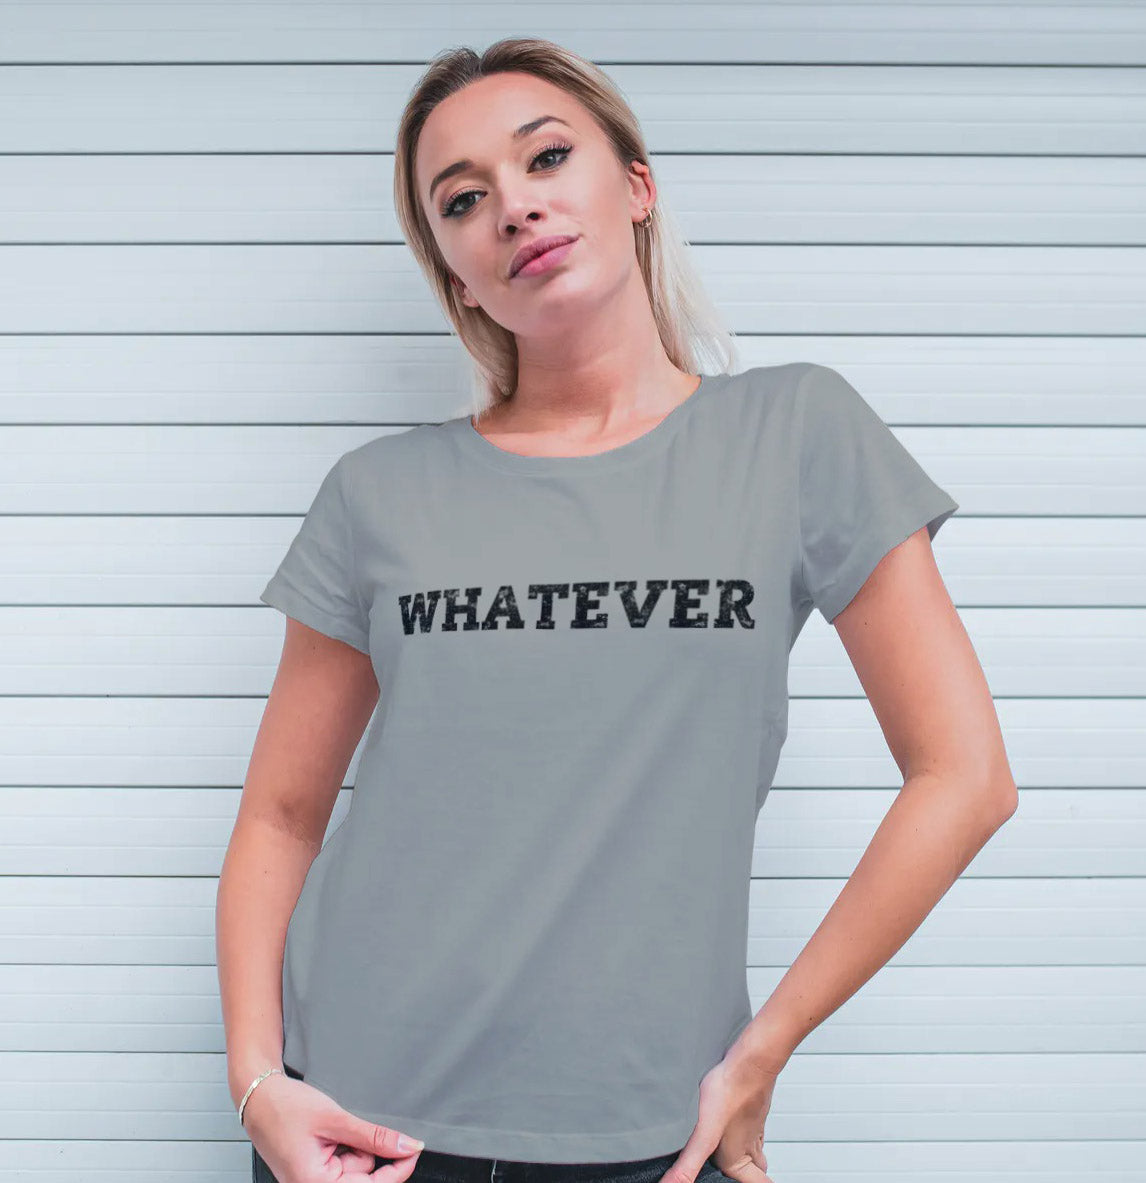 WHATEVER - Unisex Cotton T-shirt